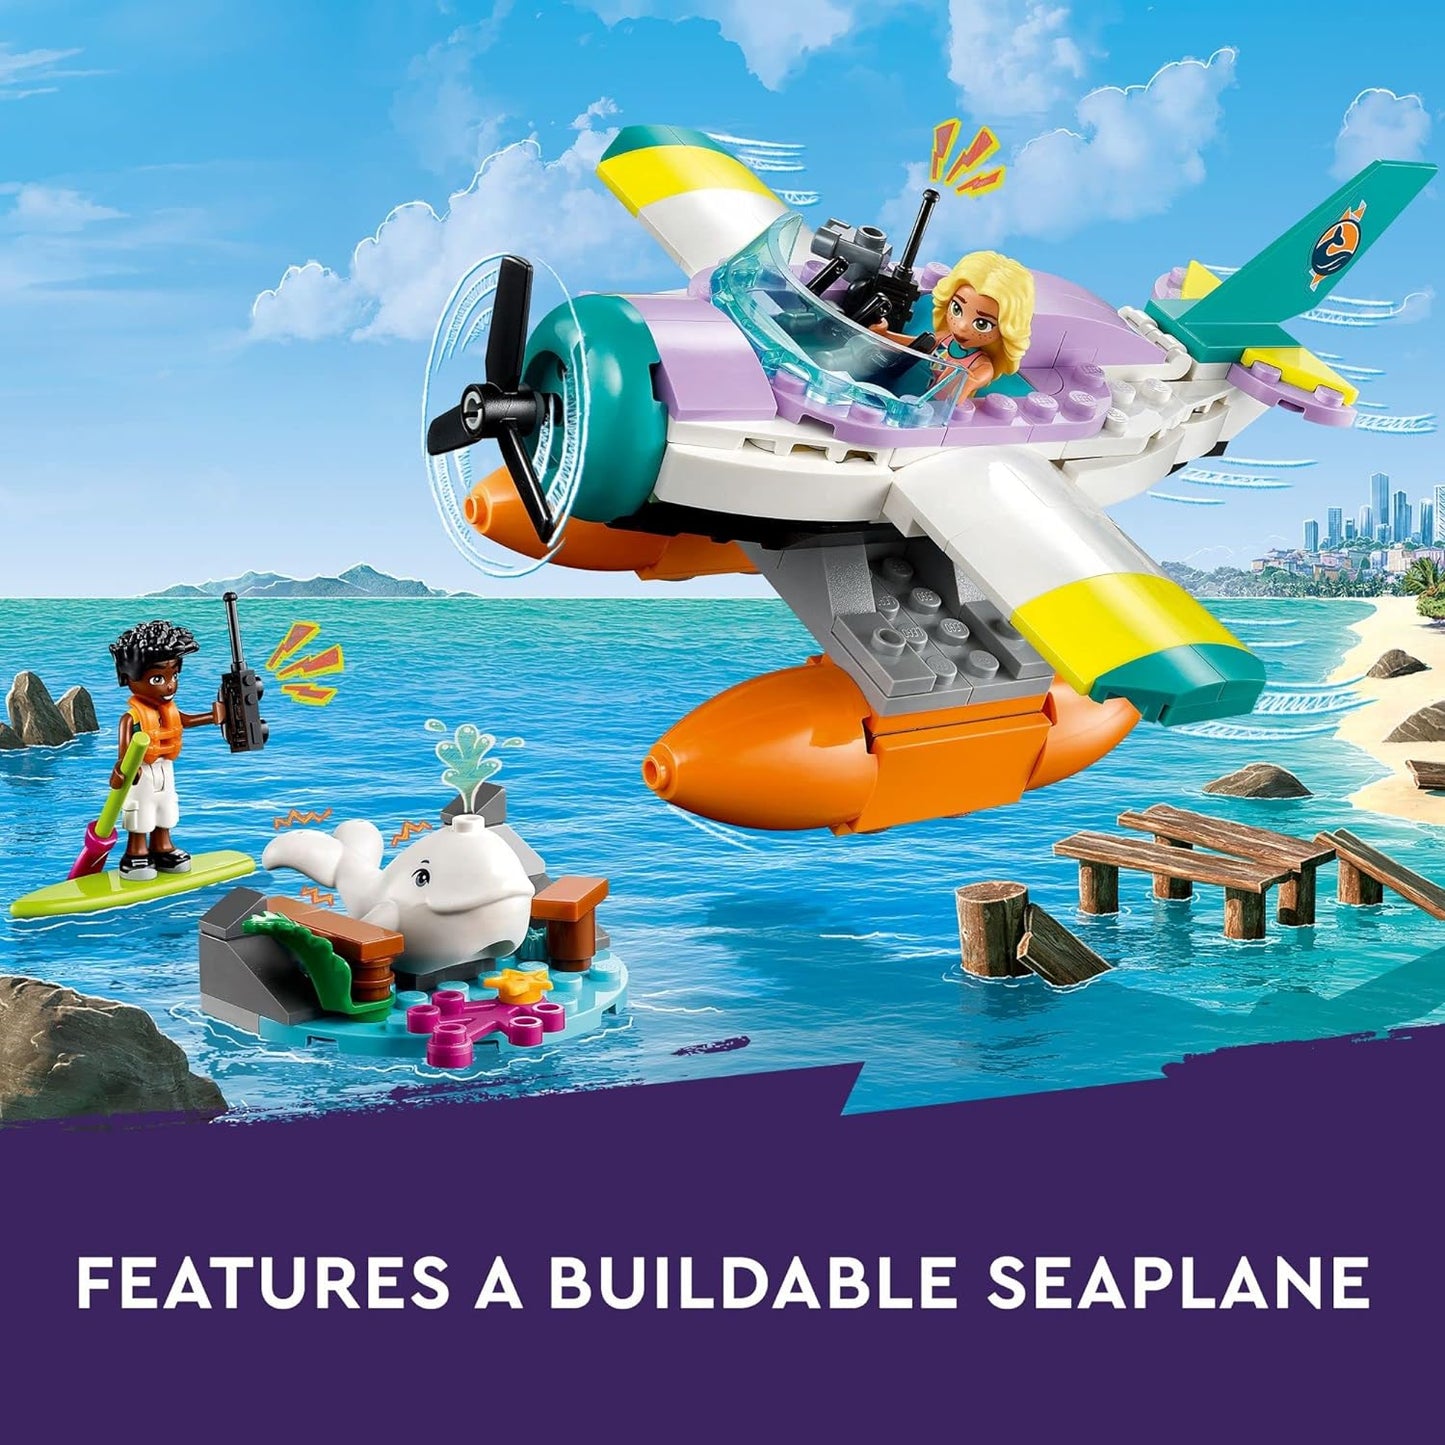 LEGO Friends - Sea Rescue Plane 41752